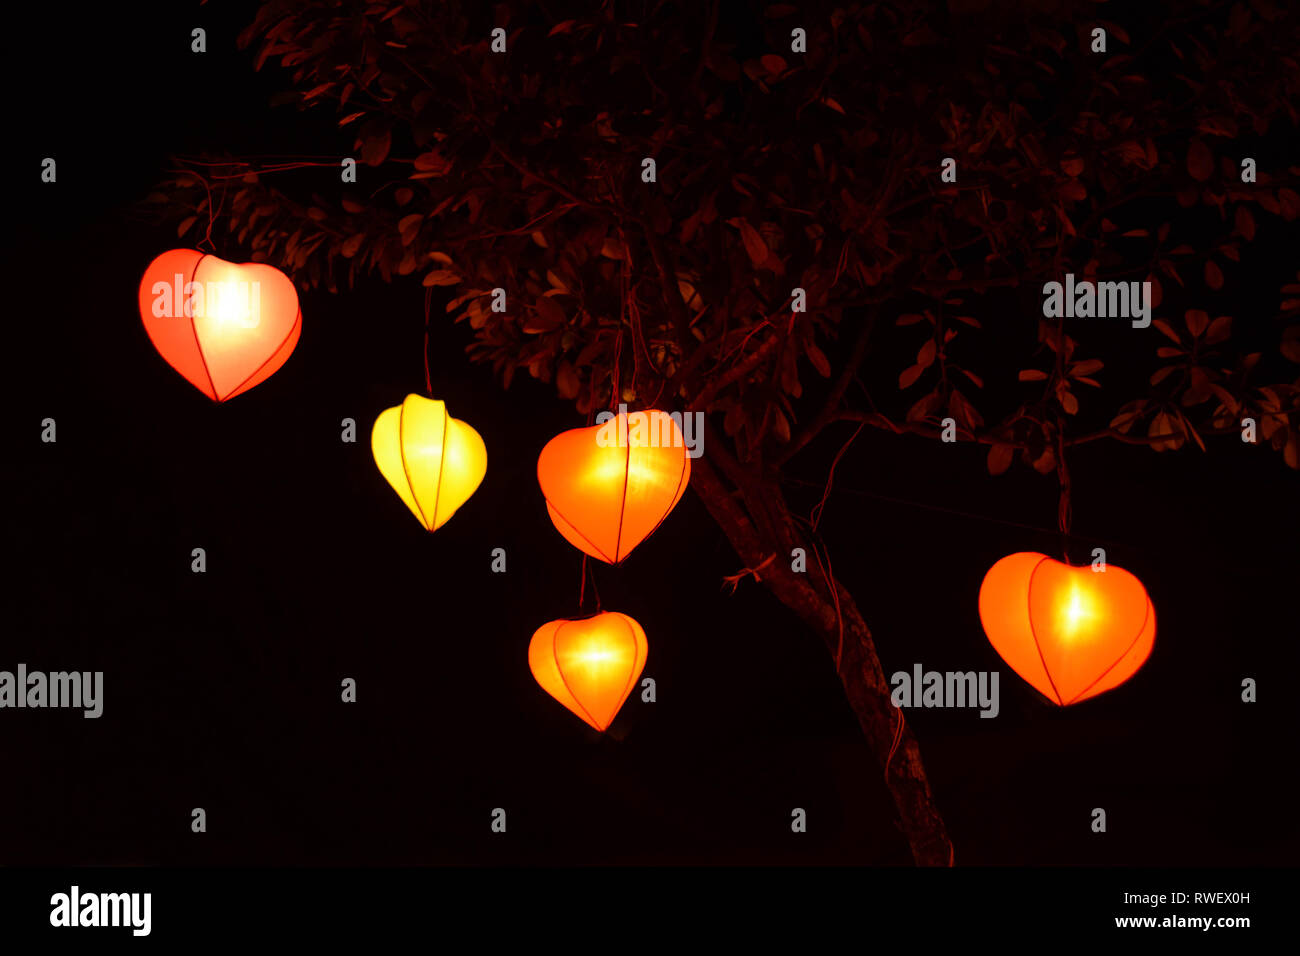 Lampion linterna con forma de corazón en los árboles del parque por la noche tiempo aisladas en negro Foto de stock